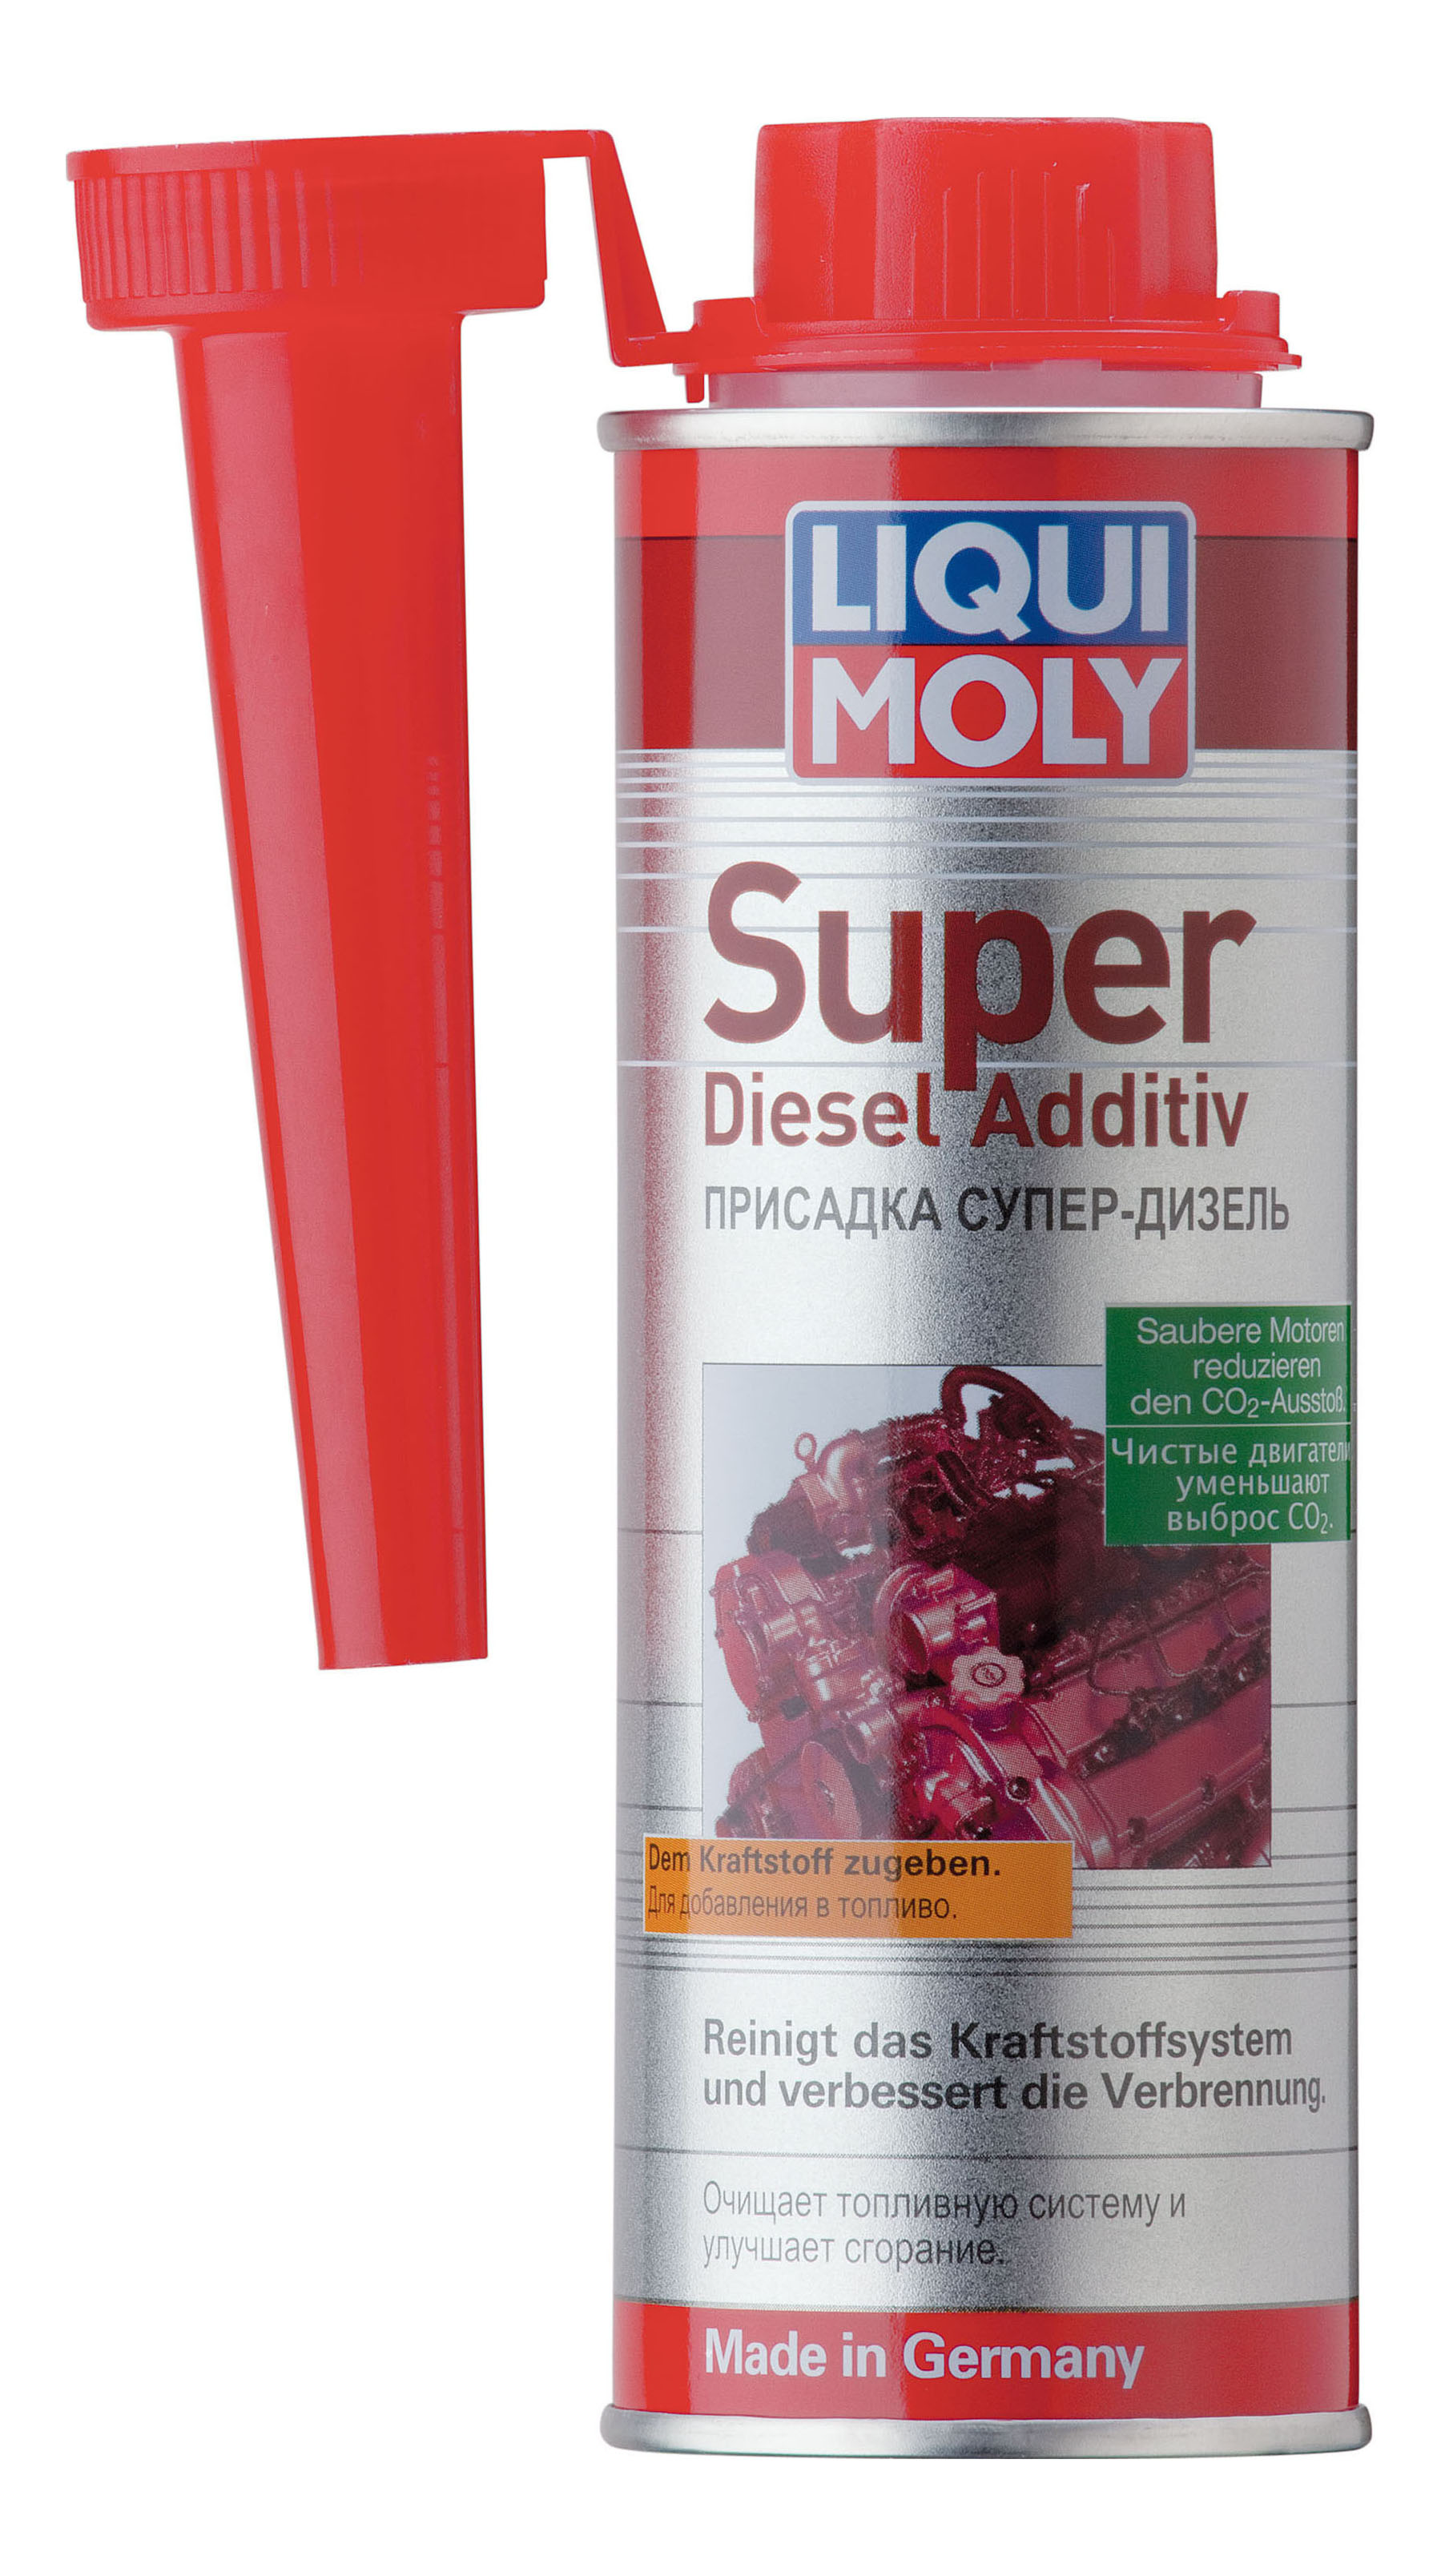 Присадки в топливо для очистки. Liqui Moly super Diesel Additiv. Присадка Liqui Moly "super Diesel Additiv", 0,25 л. 1991 Liqui Moly. Очиститель для дизеля Ликви Молли.